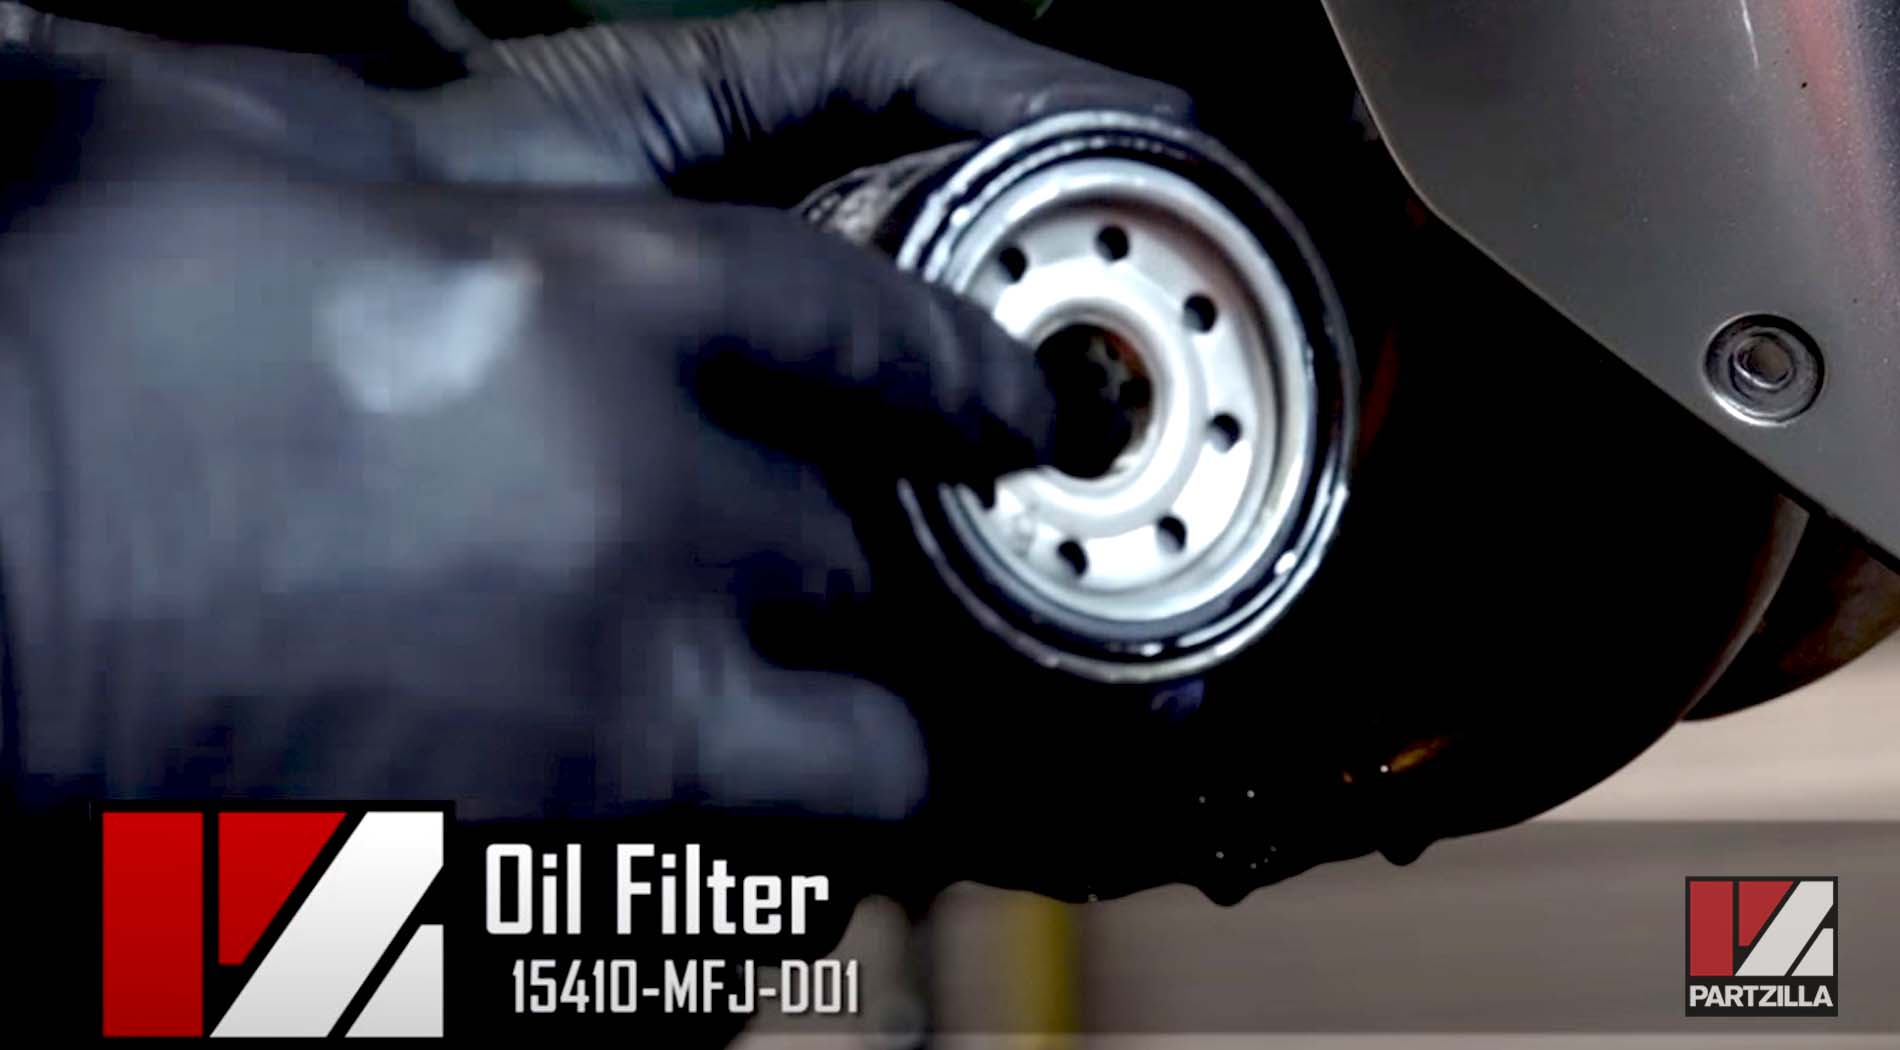 Honda CBR 600 oil filter